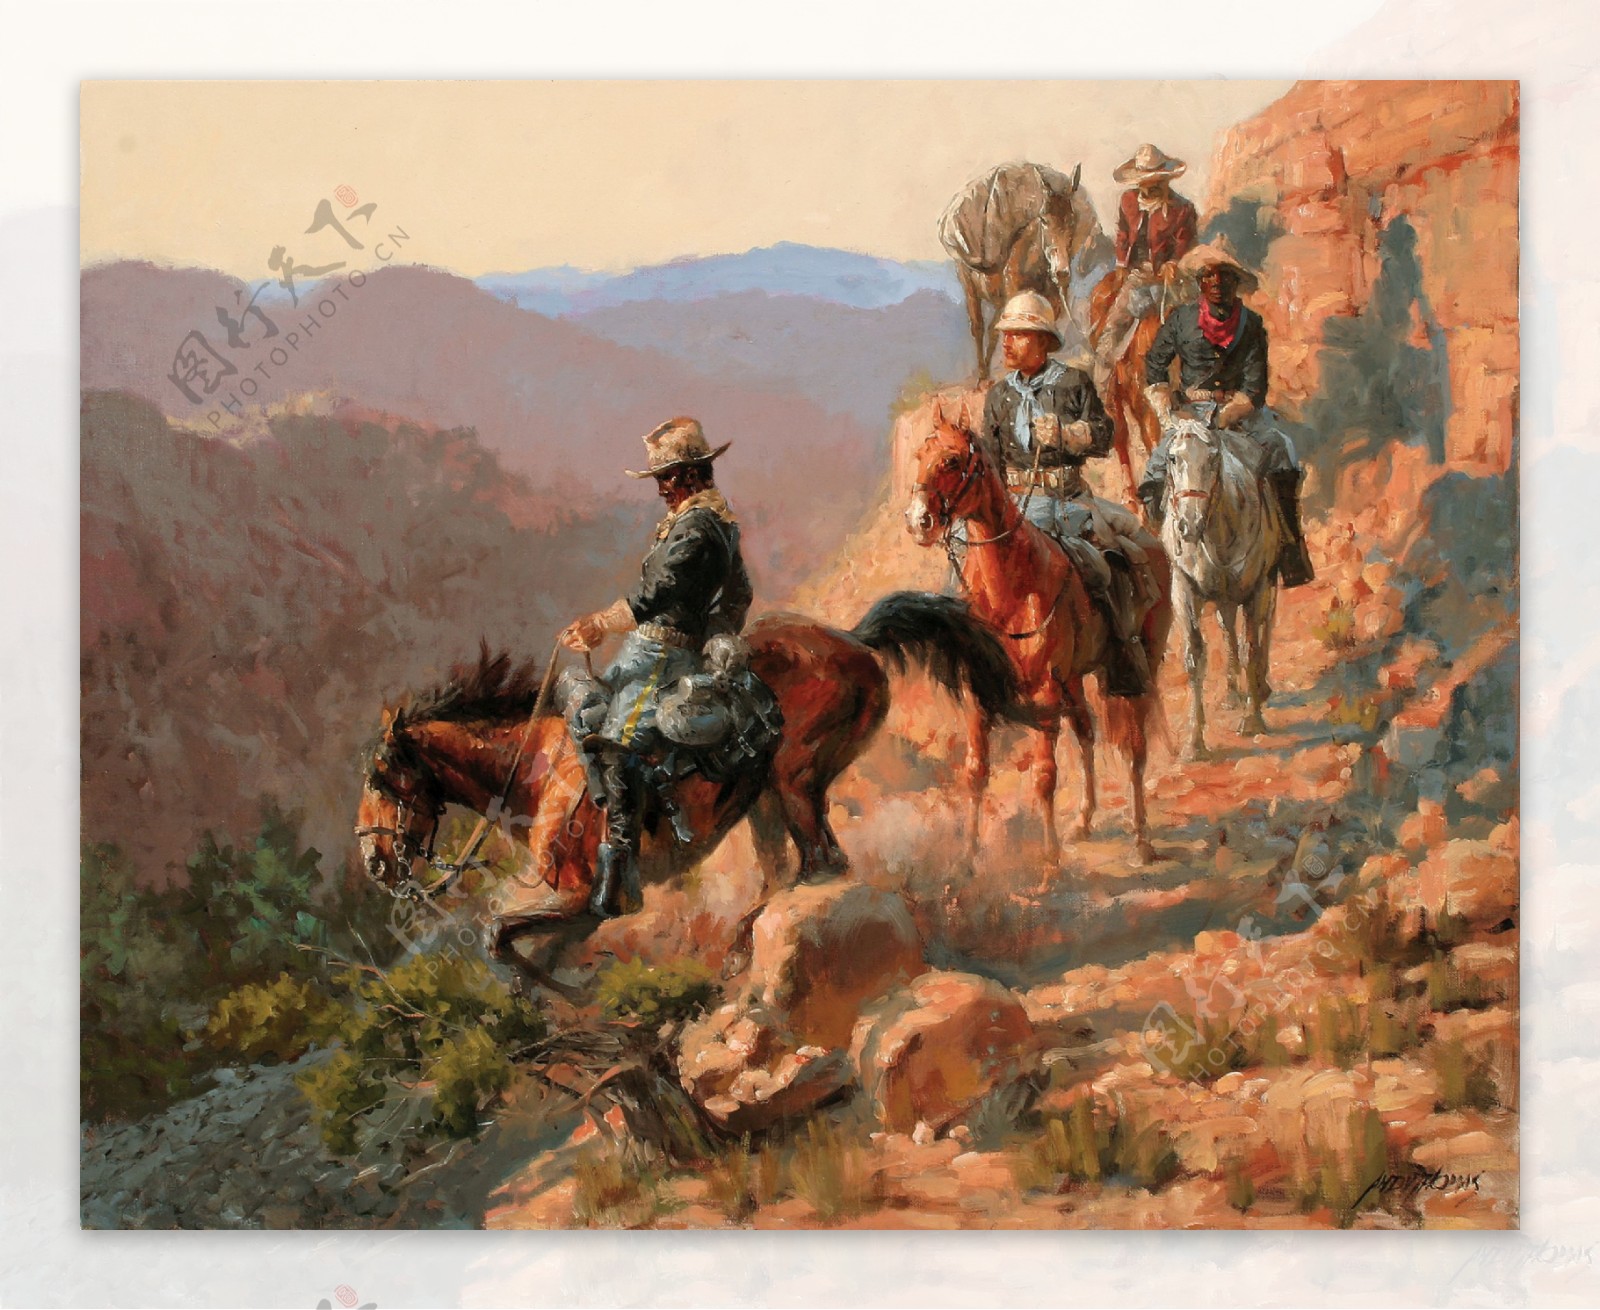 山地上骑马的人油画图片